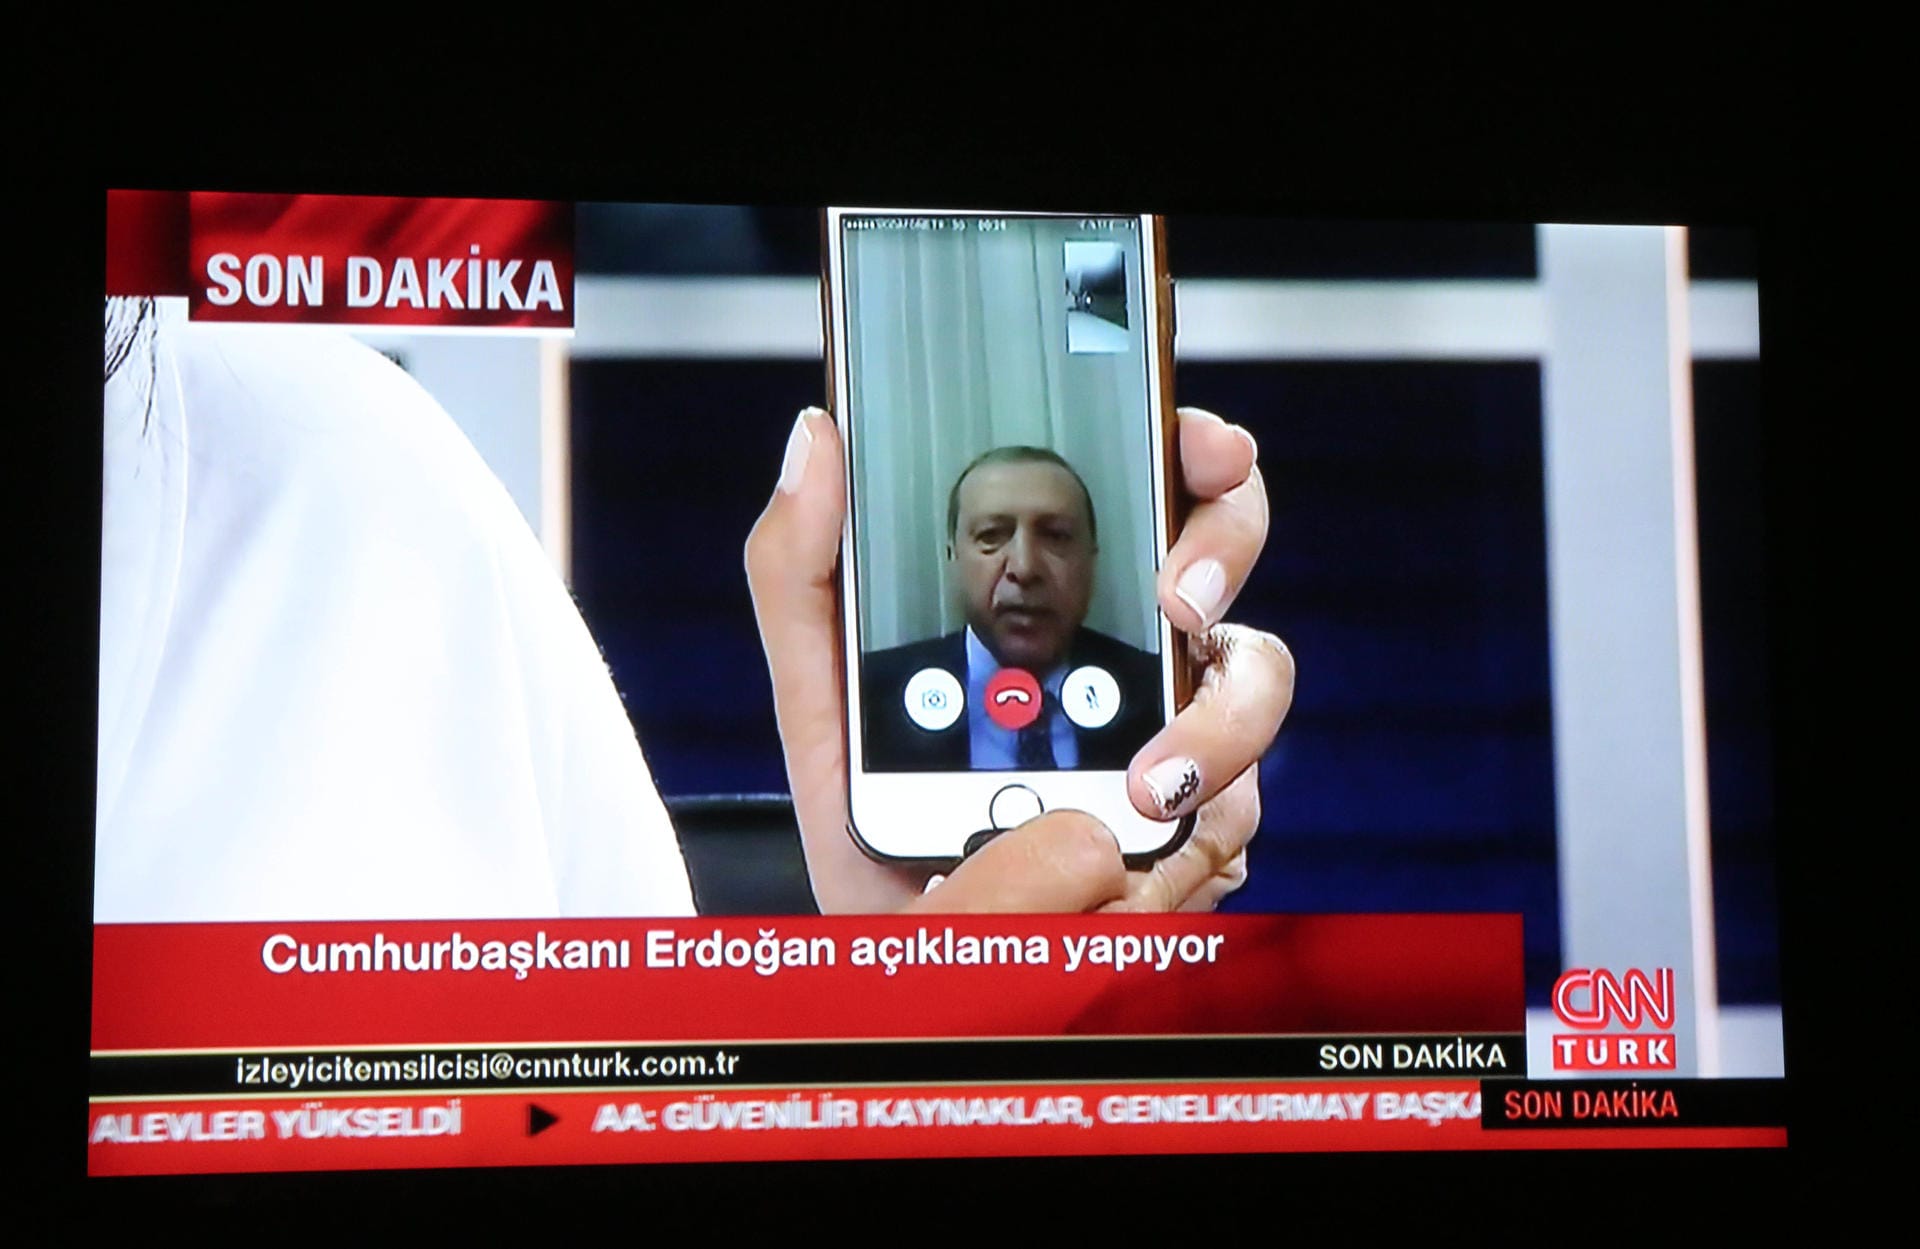 Doch zuvor erschütterte ein Putschversuch im Jahr 2016 die Türkei. Erdogan entkam knapp einem Mordkommando und meldete sich per Handyvideo zu Wort. Er rief die Bevölkerung auf, den Putsch von Teilen des Militärs niederzuschlagen. Mit Erfolg. Erdogan machte daraufhin die Gülen-Bewegung verantwortlich. Seither wurden in der Türkei tausende Menschen verhaftet.